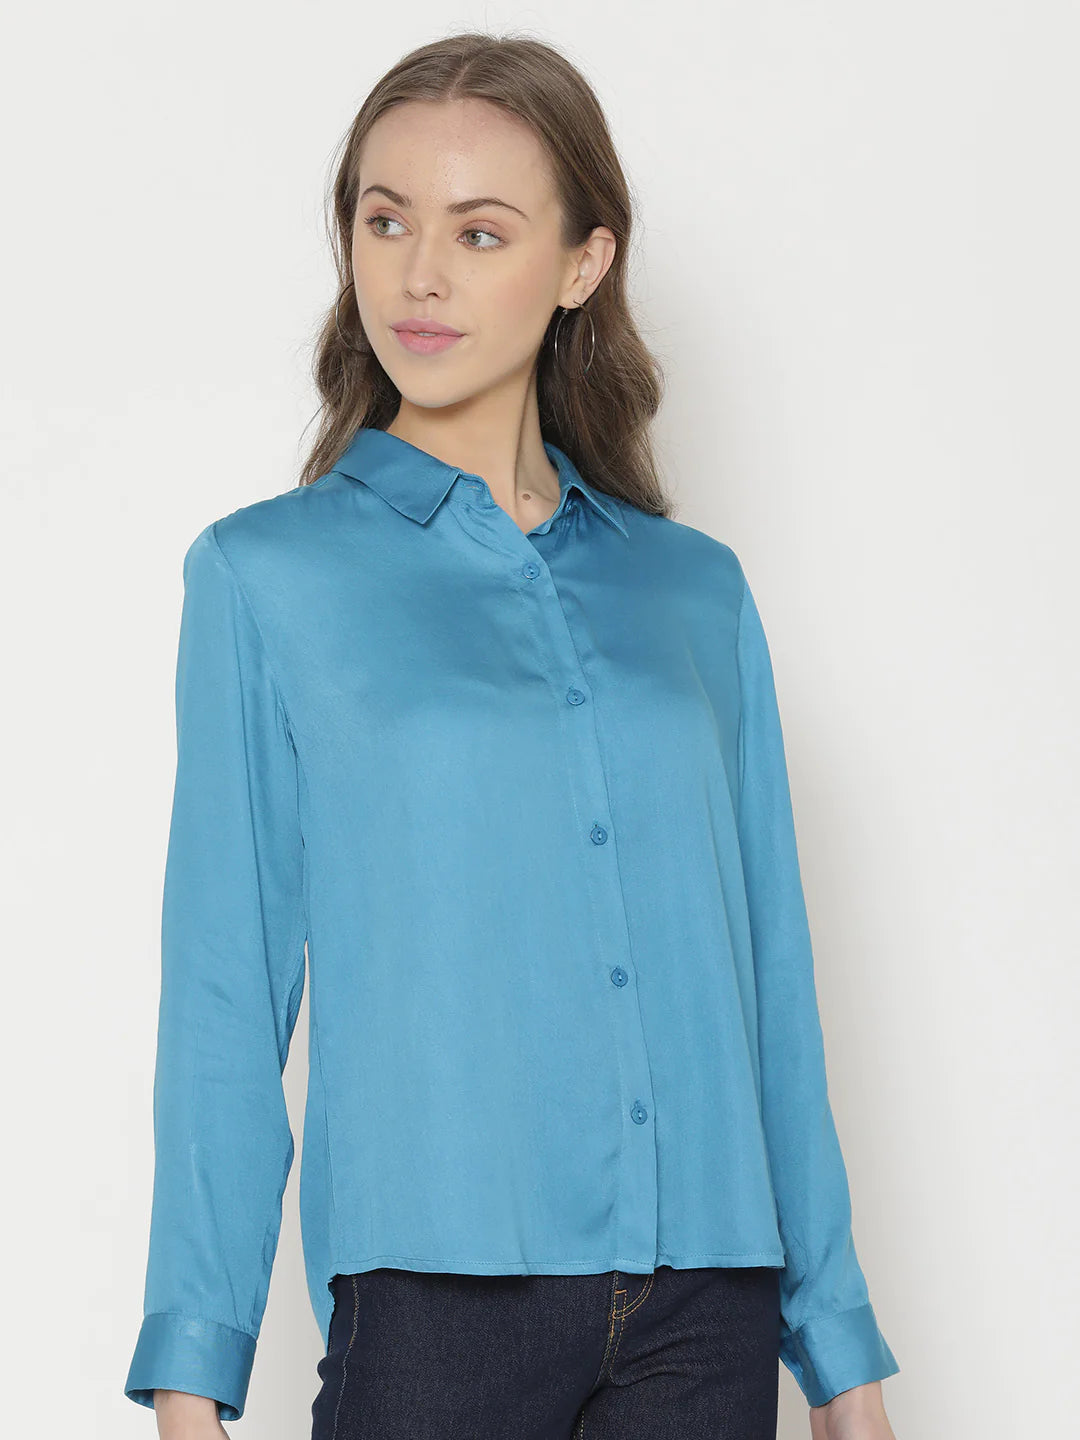 Blue Button-Down Shirt for Women | Satin Bliss Button-Down Shirt